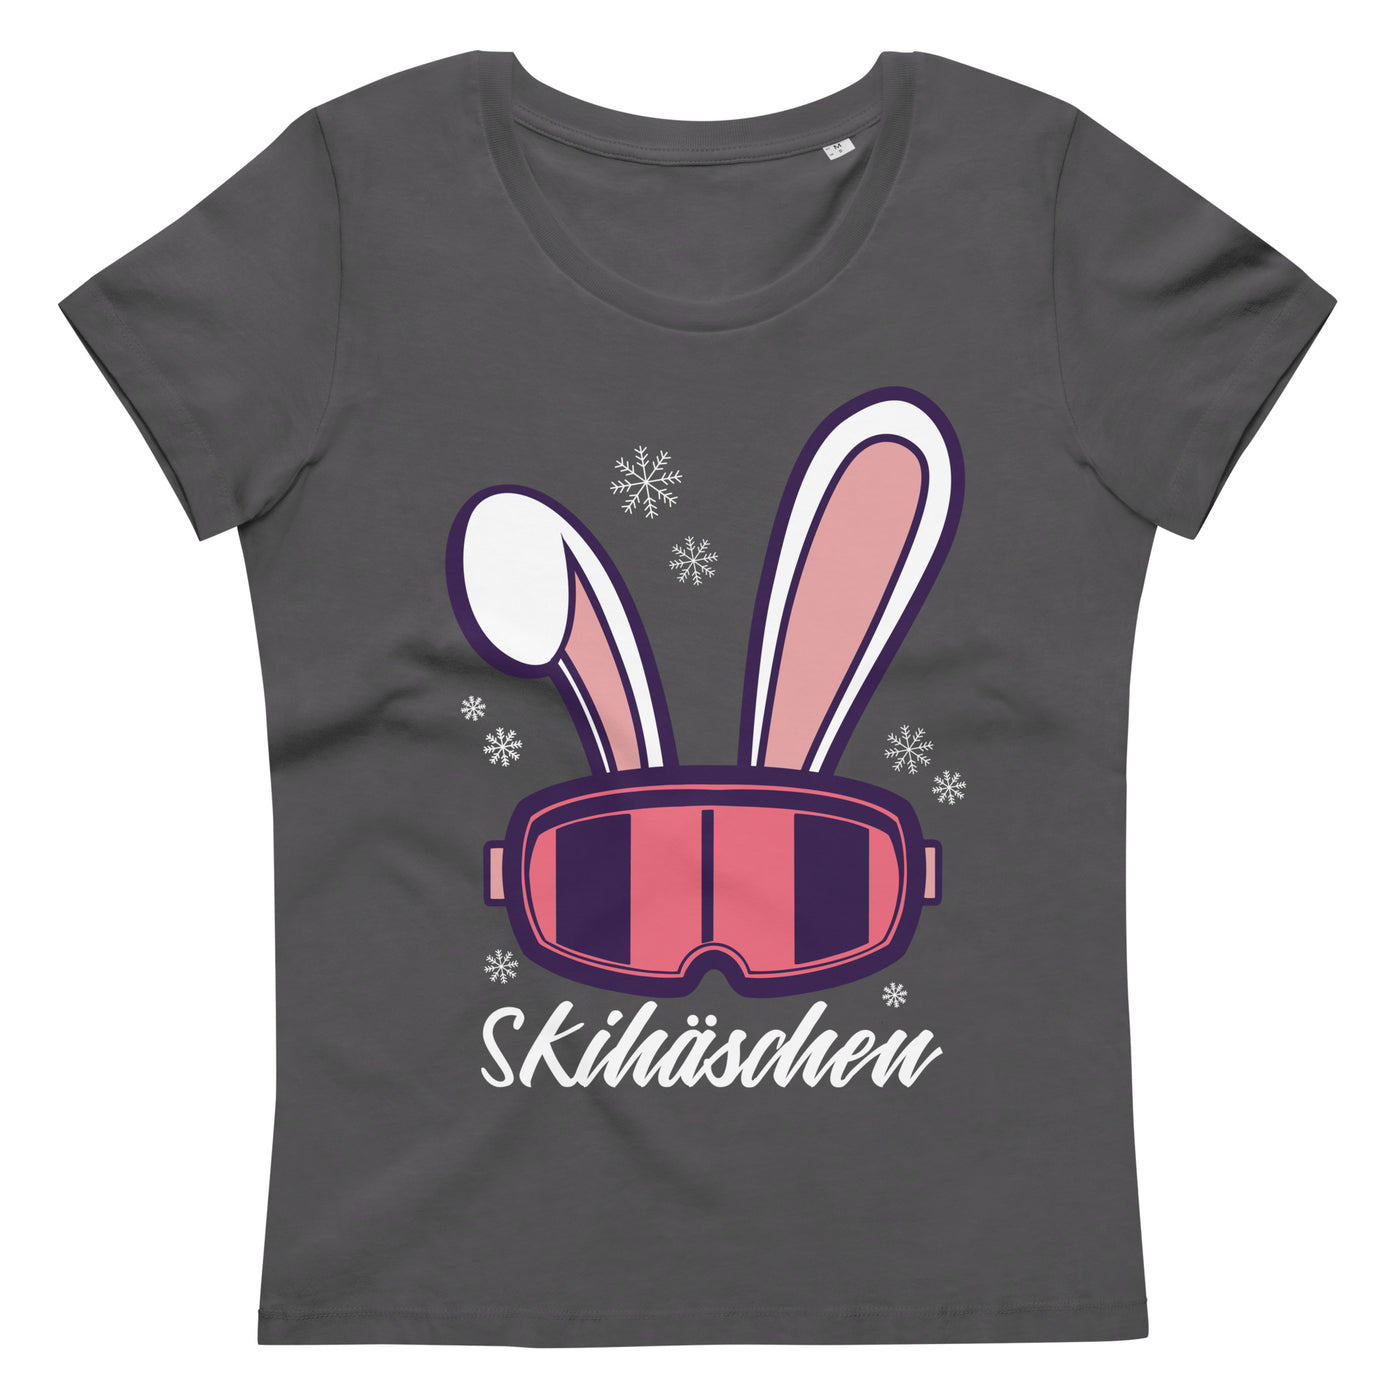 Skihäschen - (S.K) - Damen Premium Organic T-Shirt klettern